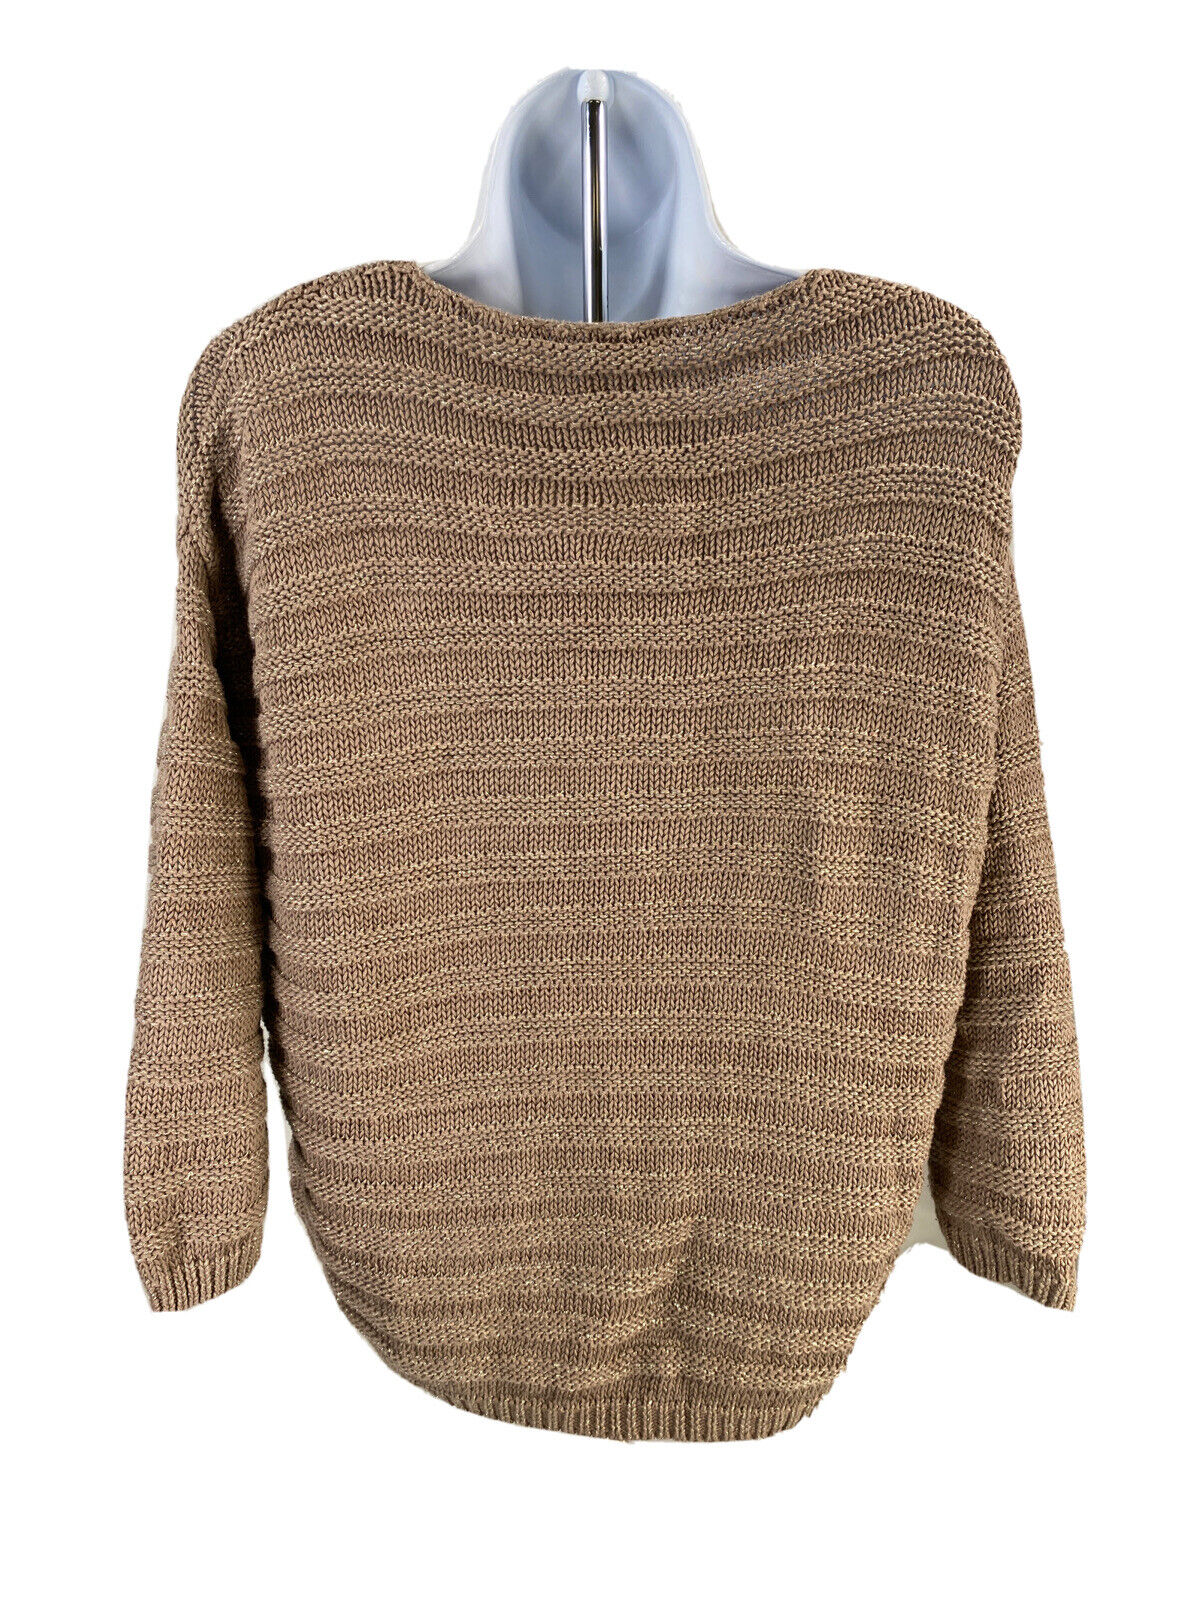 Chandail en tricot à manches 3/4 métallisé marron Chicos pour femme Sz 1/M